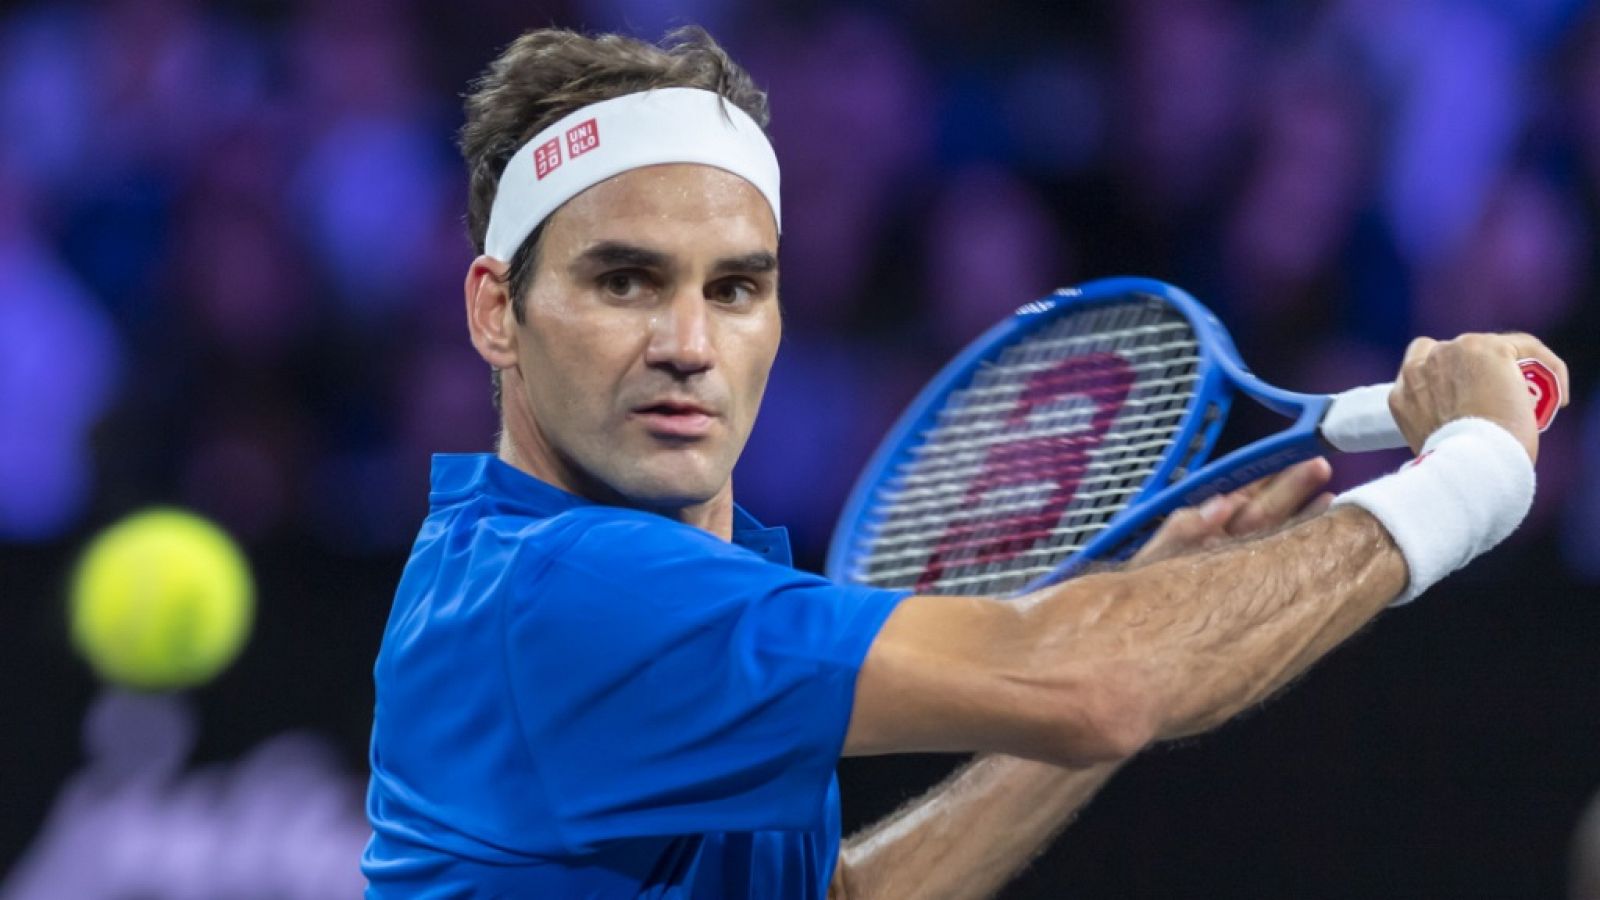 Tenis - Laver Cup 2019. 6º partido individual: Federer - Kyrgios